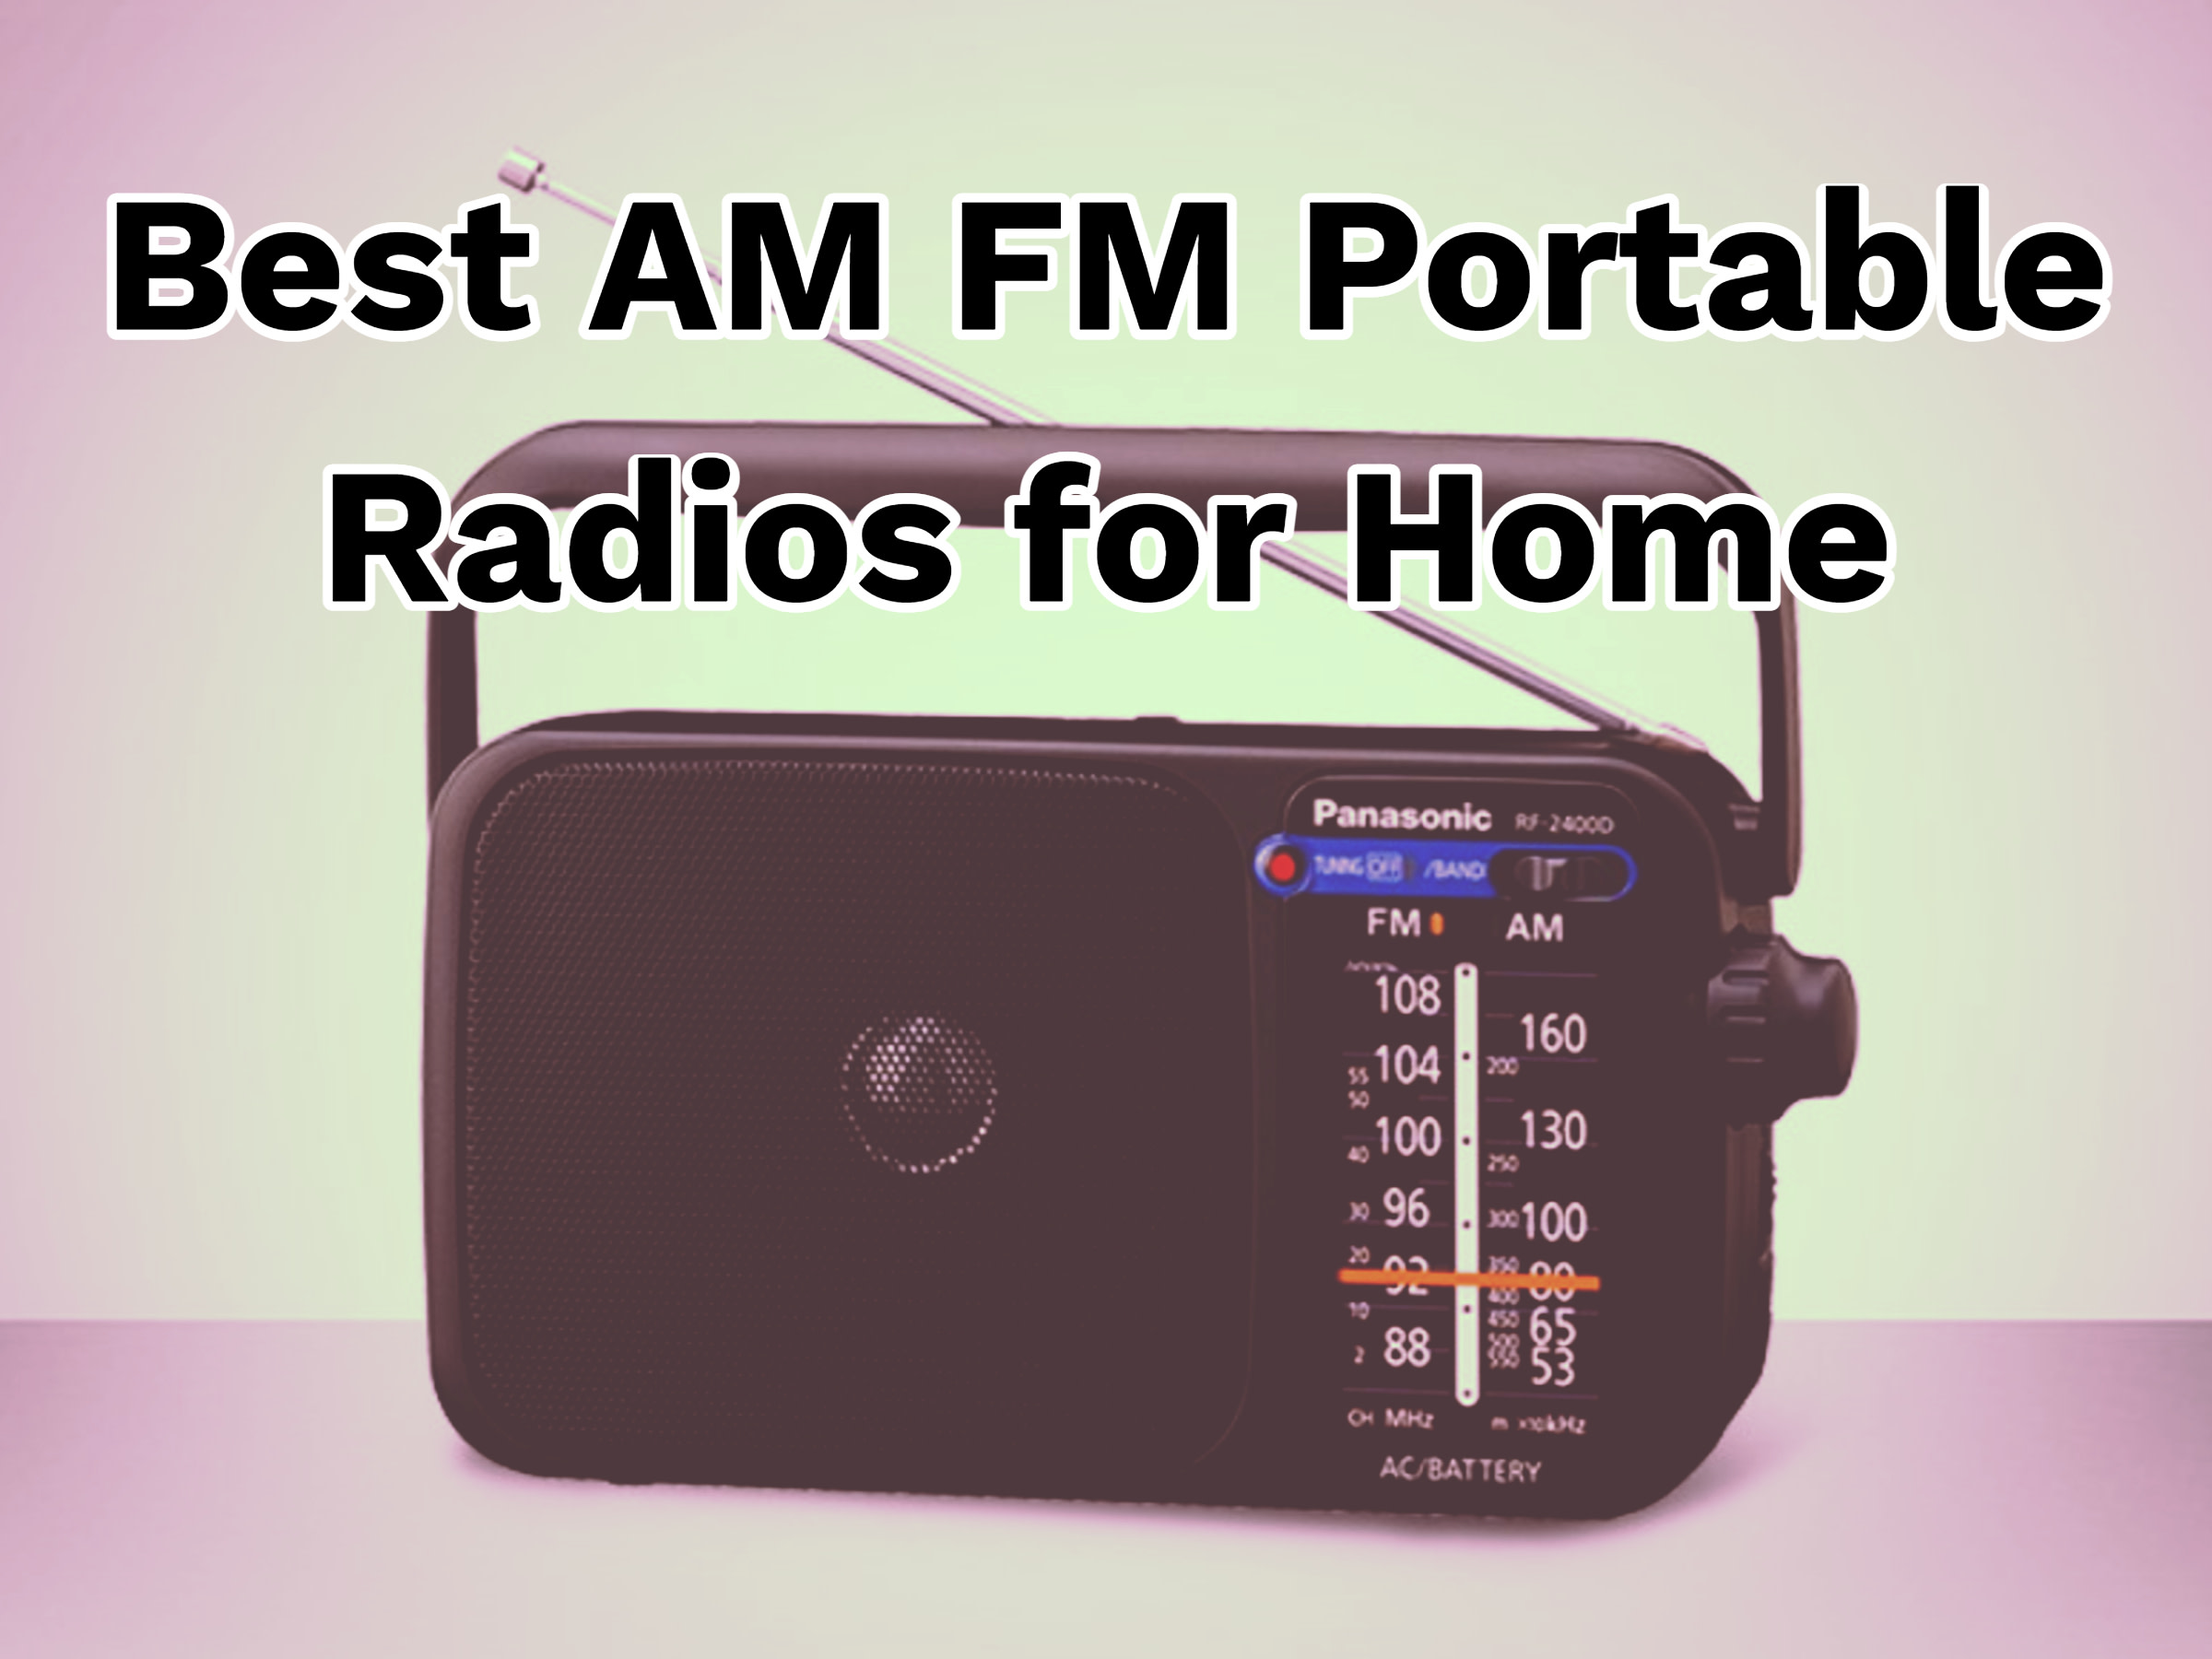 AM FM Portable Radios